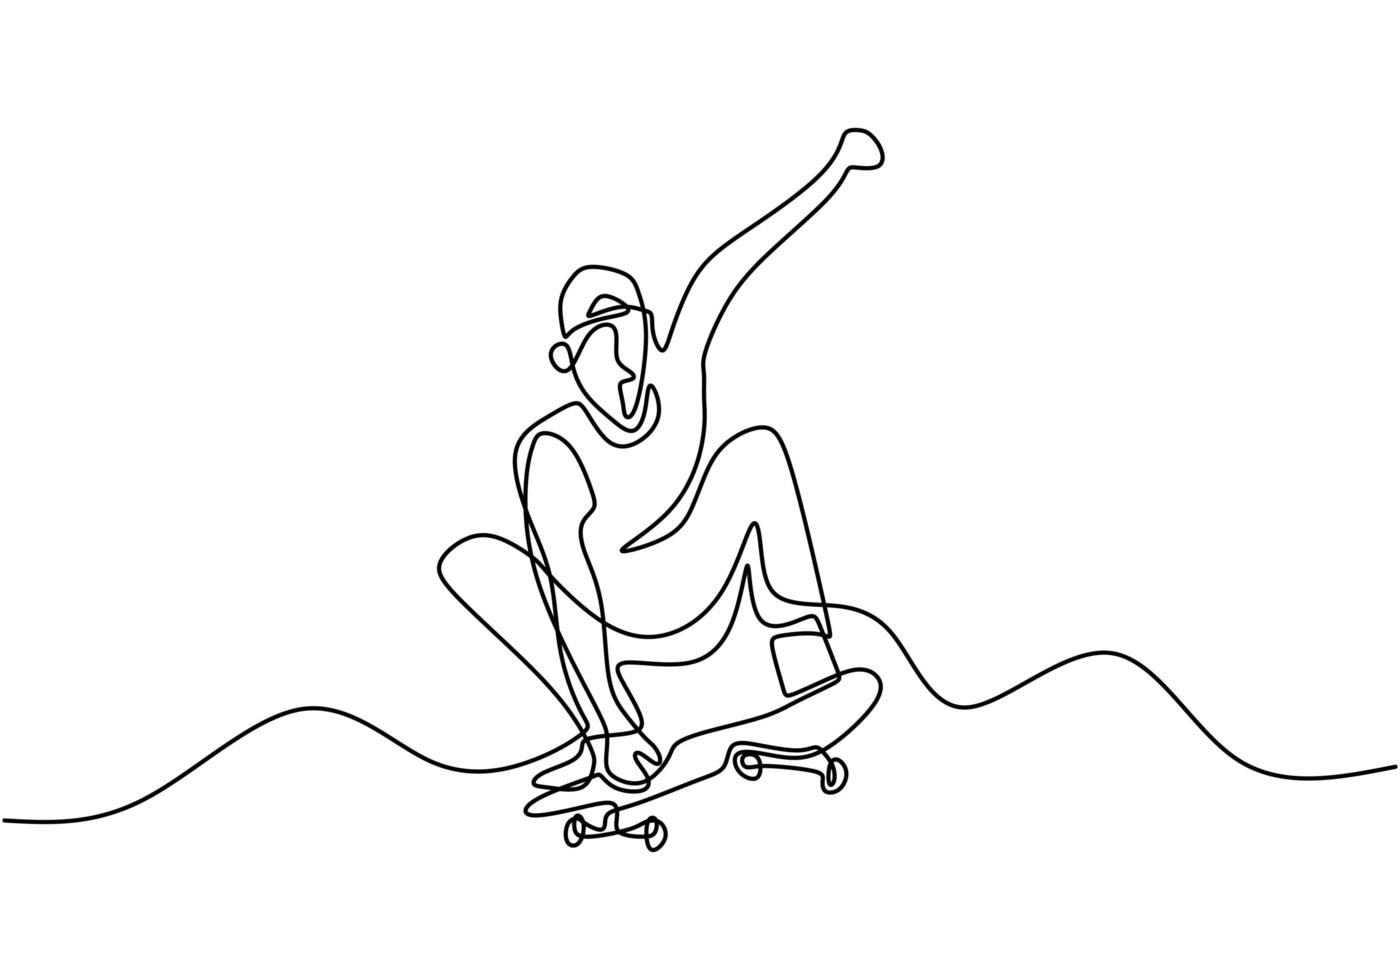 eine einzige durchgehende Strichzeichnung des Skateboardspielers. Junge Skateboarder Mann Übung Reiten Skateboard an Rampe Brett Vektor-Illustration. Extremsport-Vektorillustrationsthema vektor